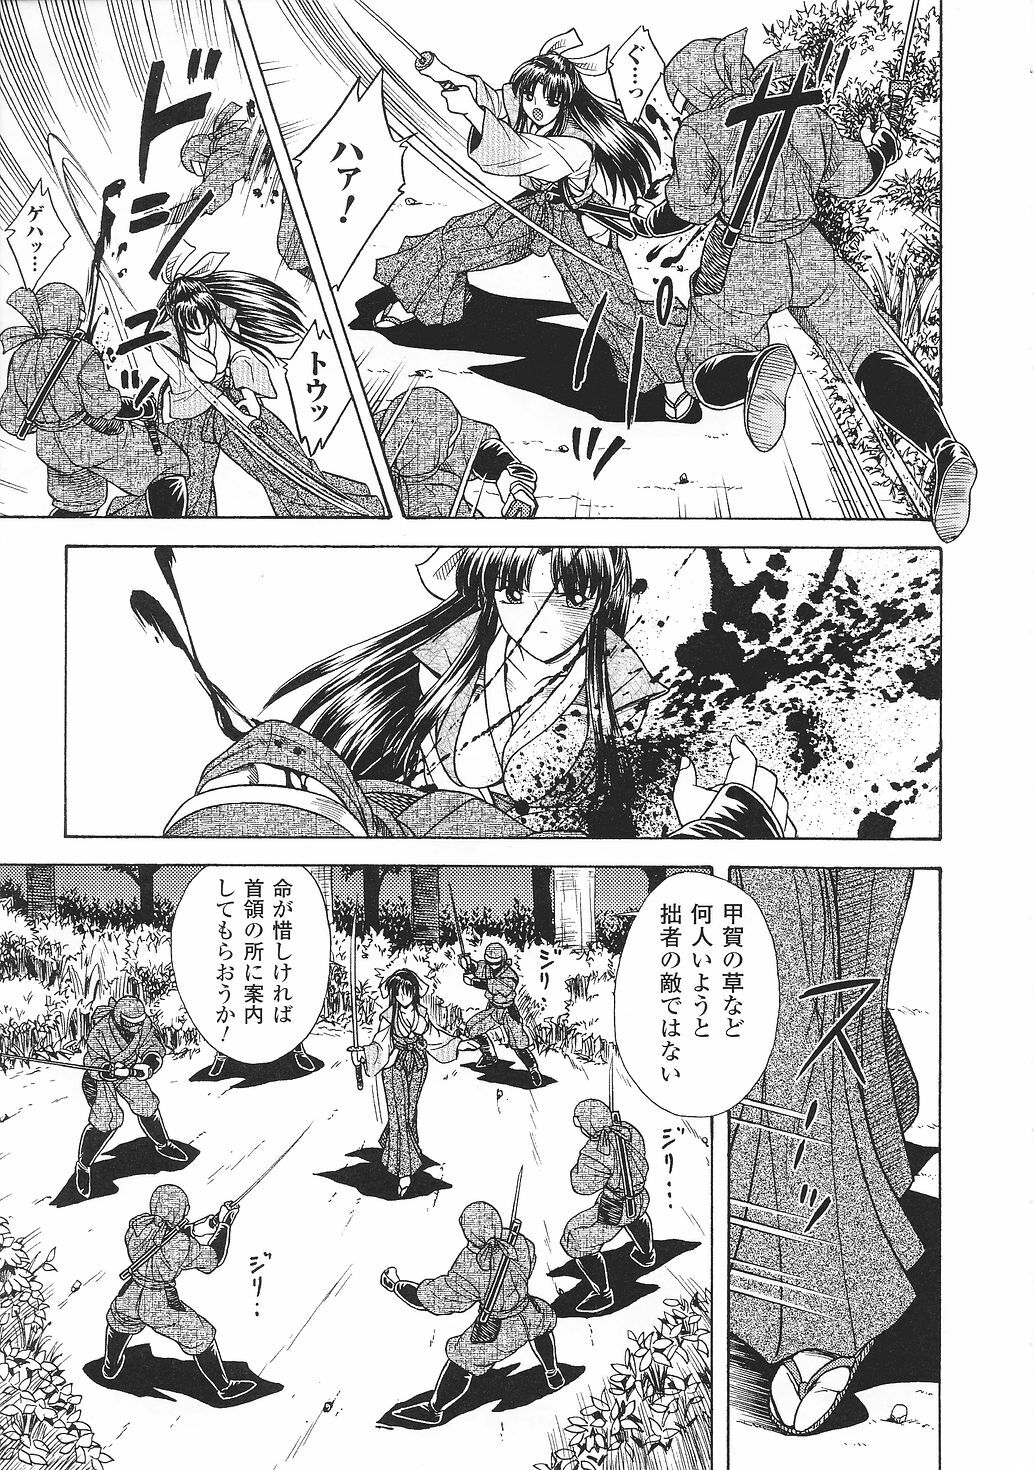 [Anthology] Tatakau Heroine Ryoujoku Anthology Toukiryoujoku 30 page 9 full